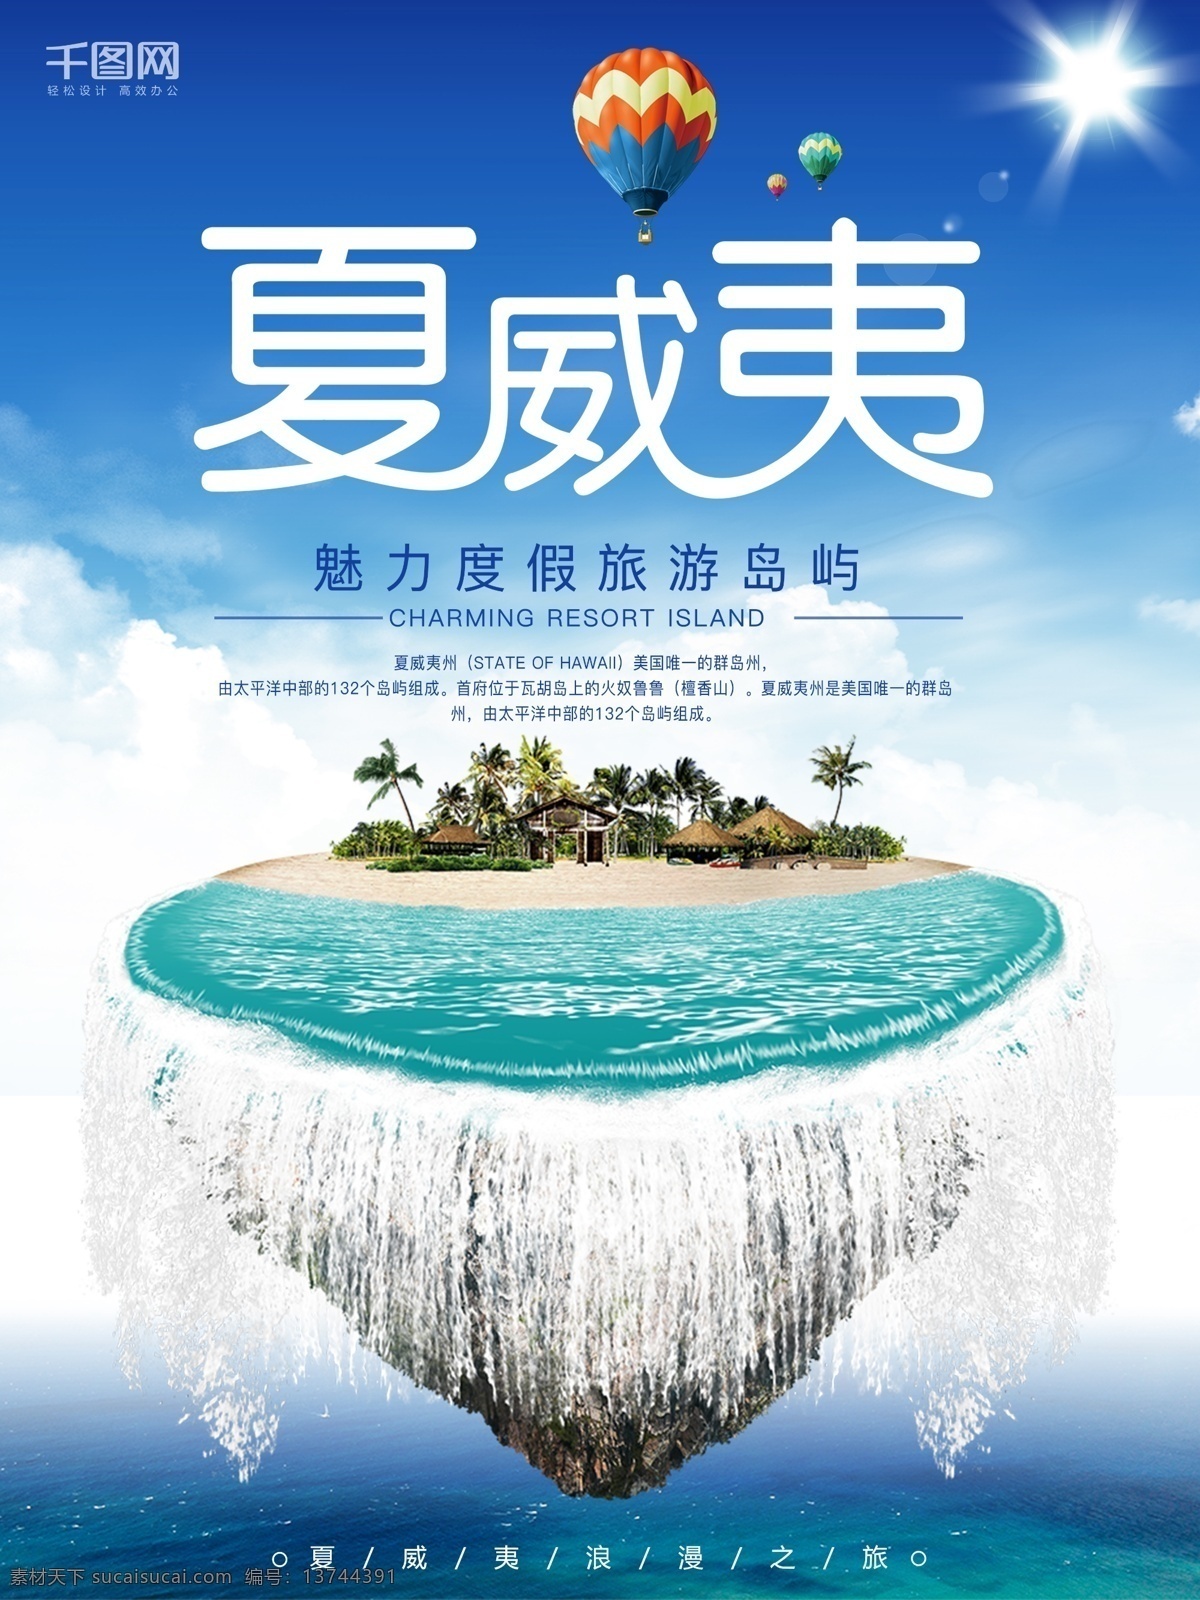 夏威夷 旅游 宣传海报 魅力度假 岛屿 热气球 海岛 浪漫之旅 旅游海报